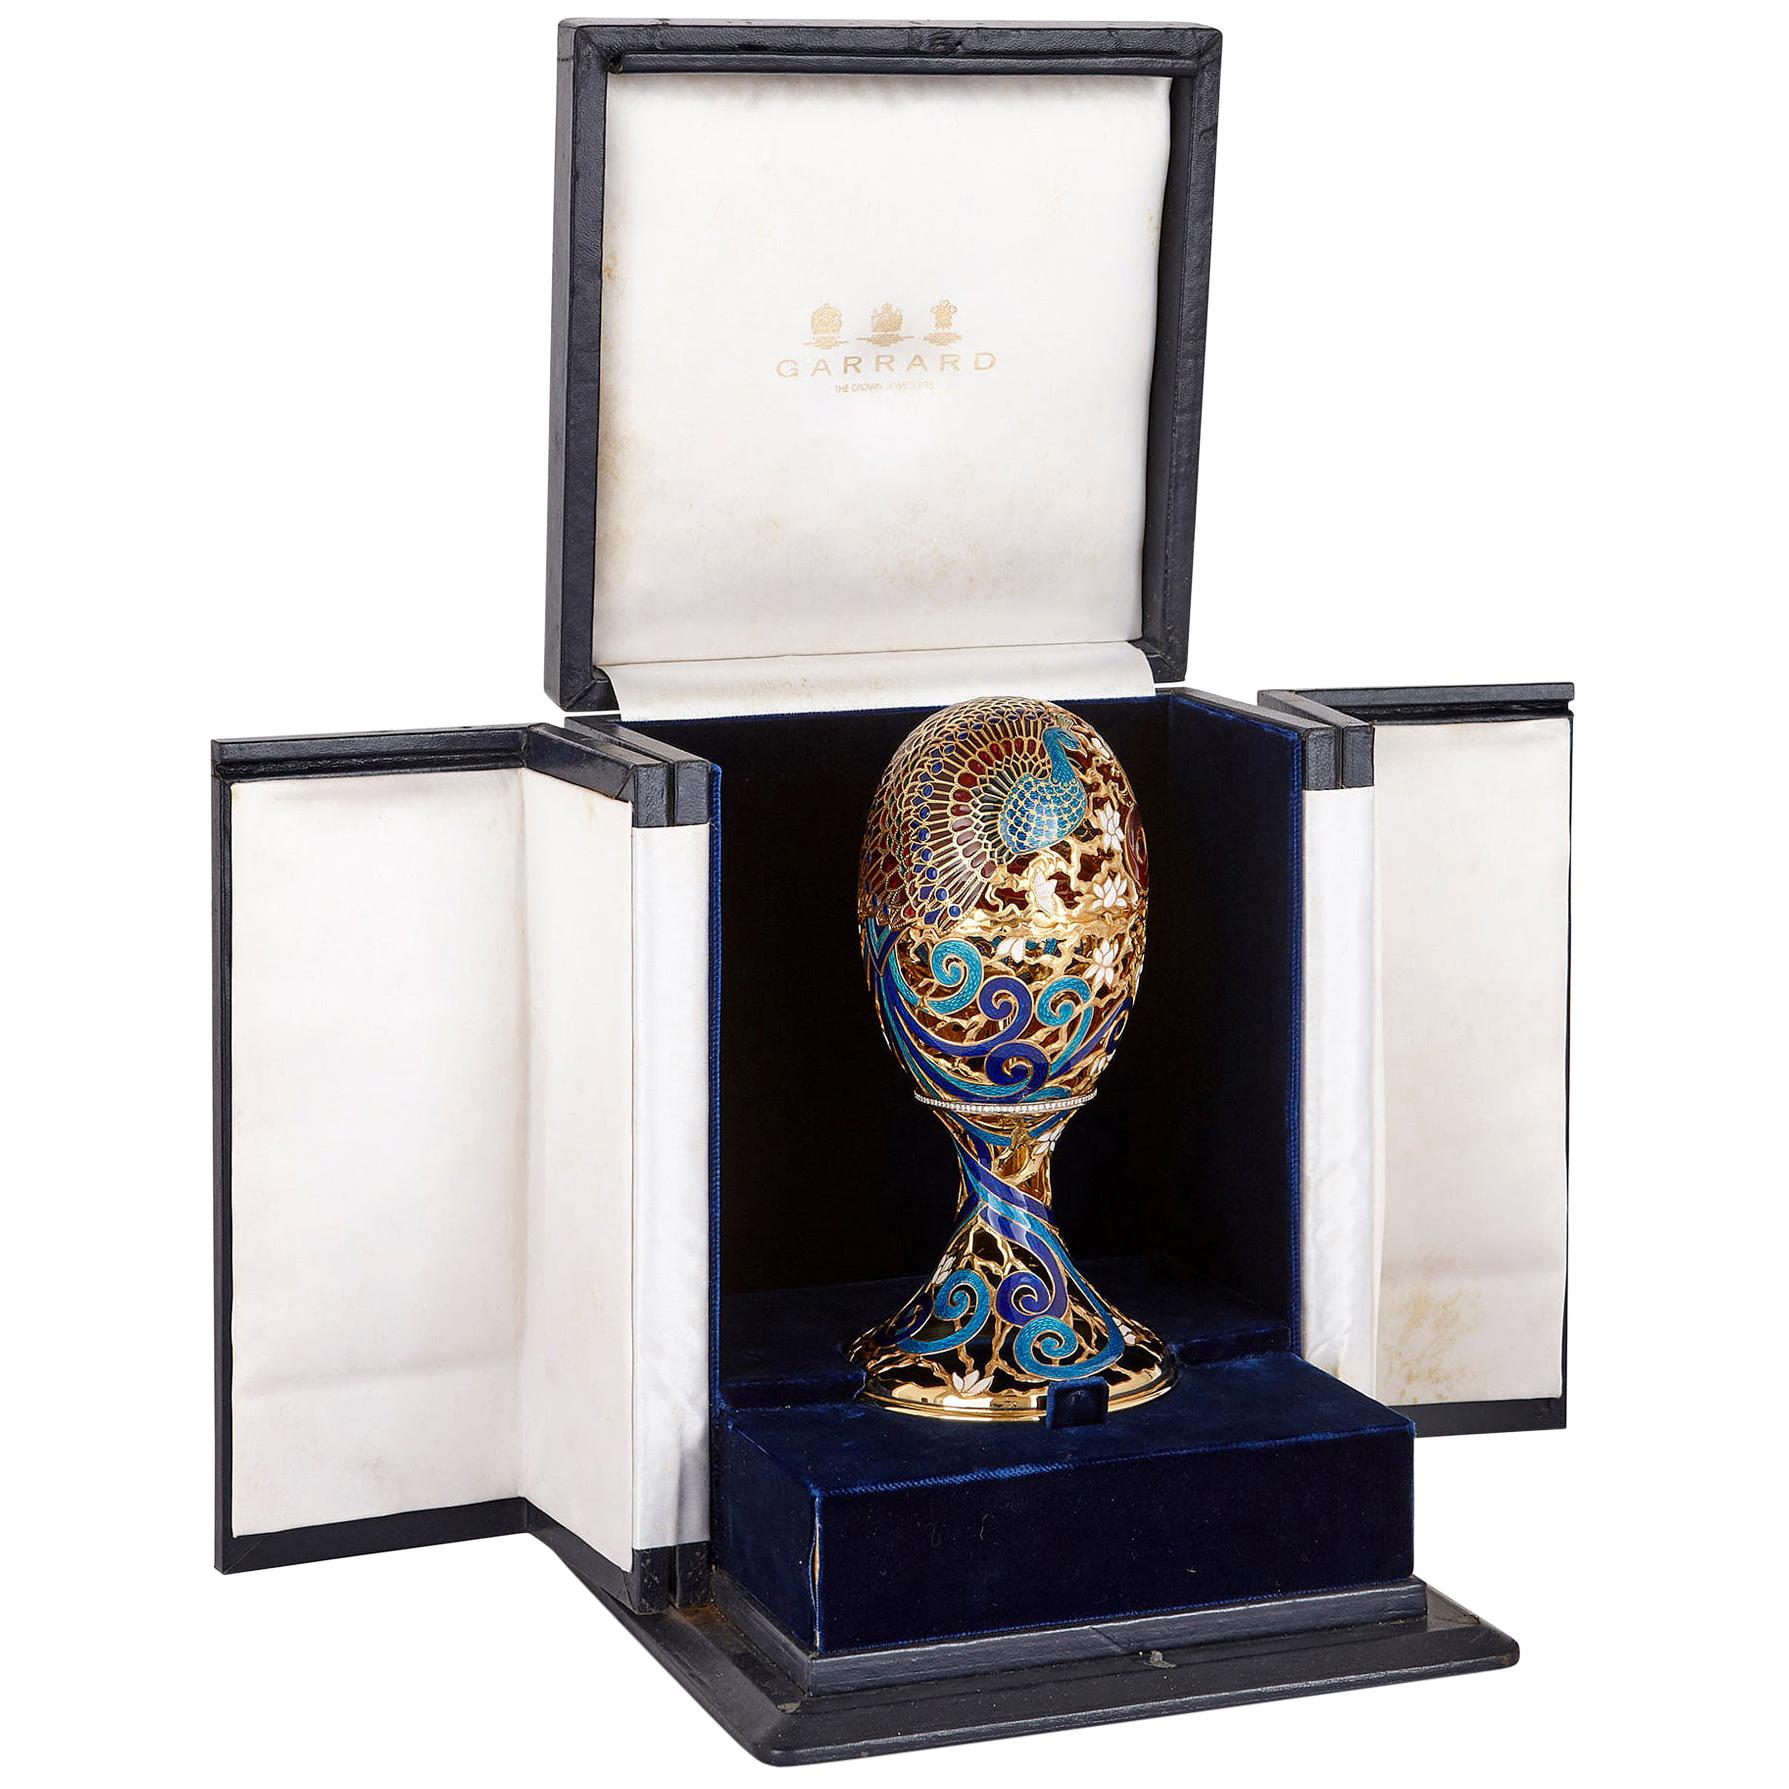 Faberge Style Egg Box